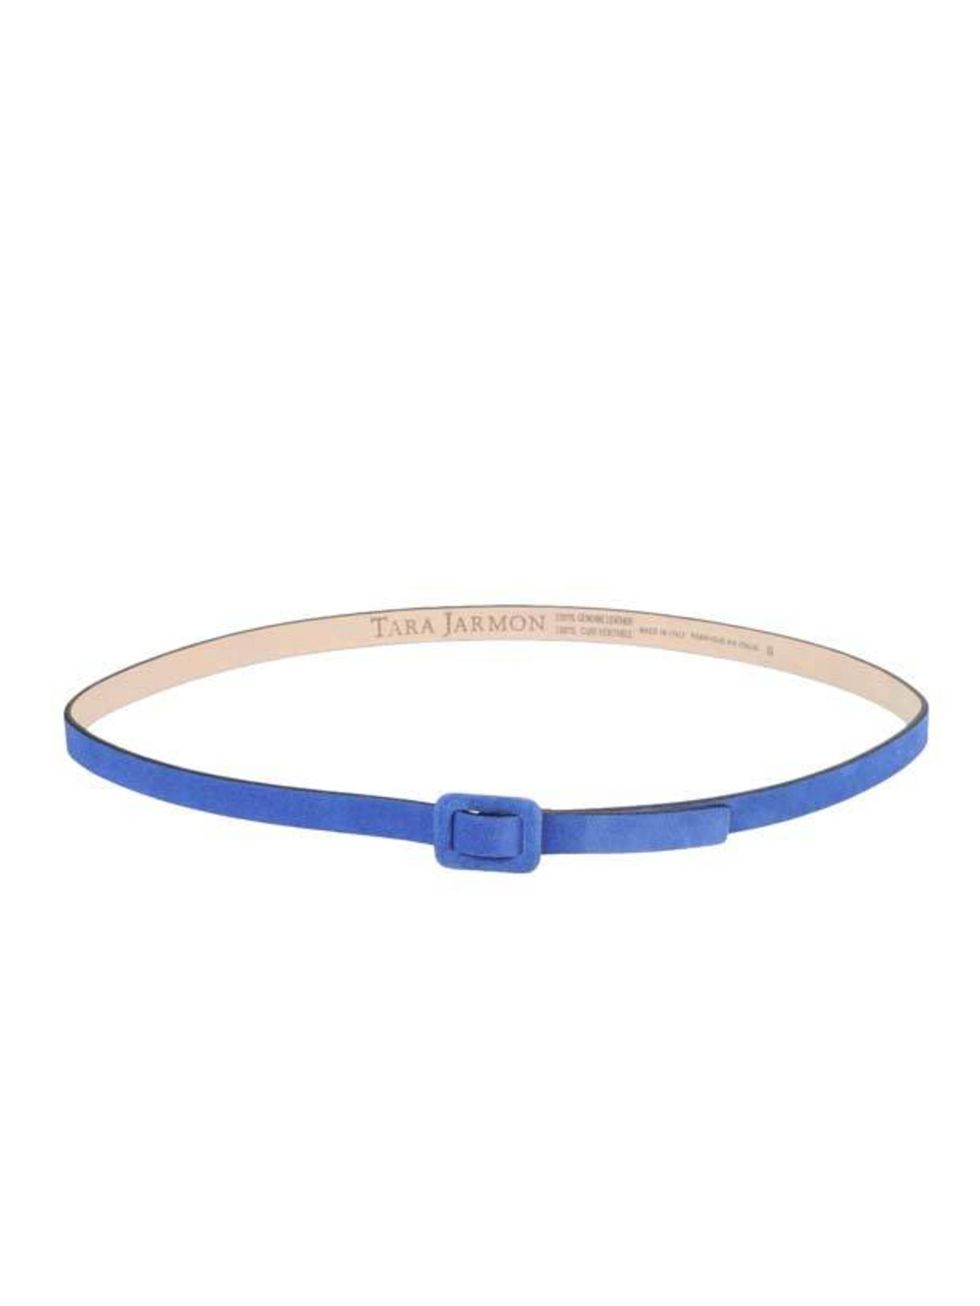 <p>Tara Jarmon cobalt blue belt, £49, at <a href="http://www.yoox.com/item/YOOX/TARA+JARMON/dept/women/tskay/B84CE7A2/rr/1/cod10/46178318CI/sts/sr_women80">yoox.com</a></p>